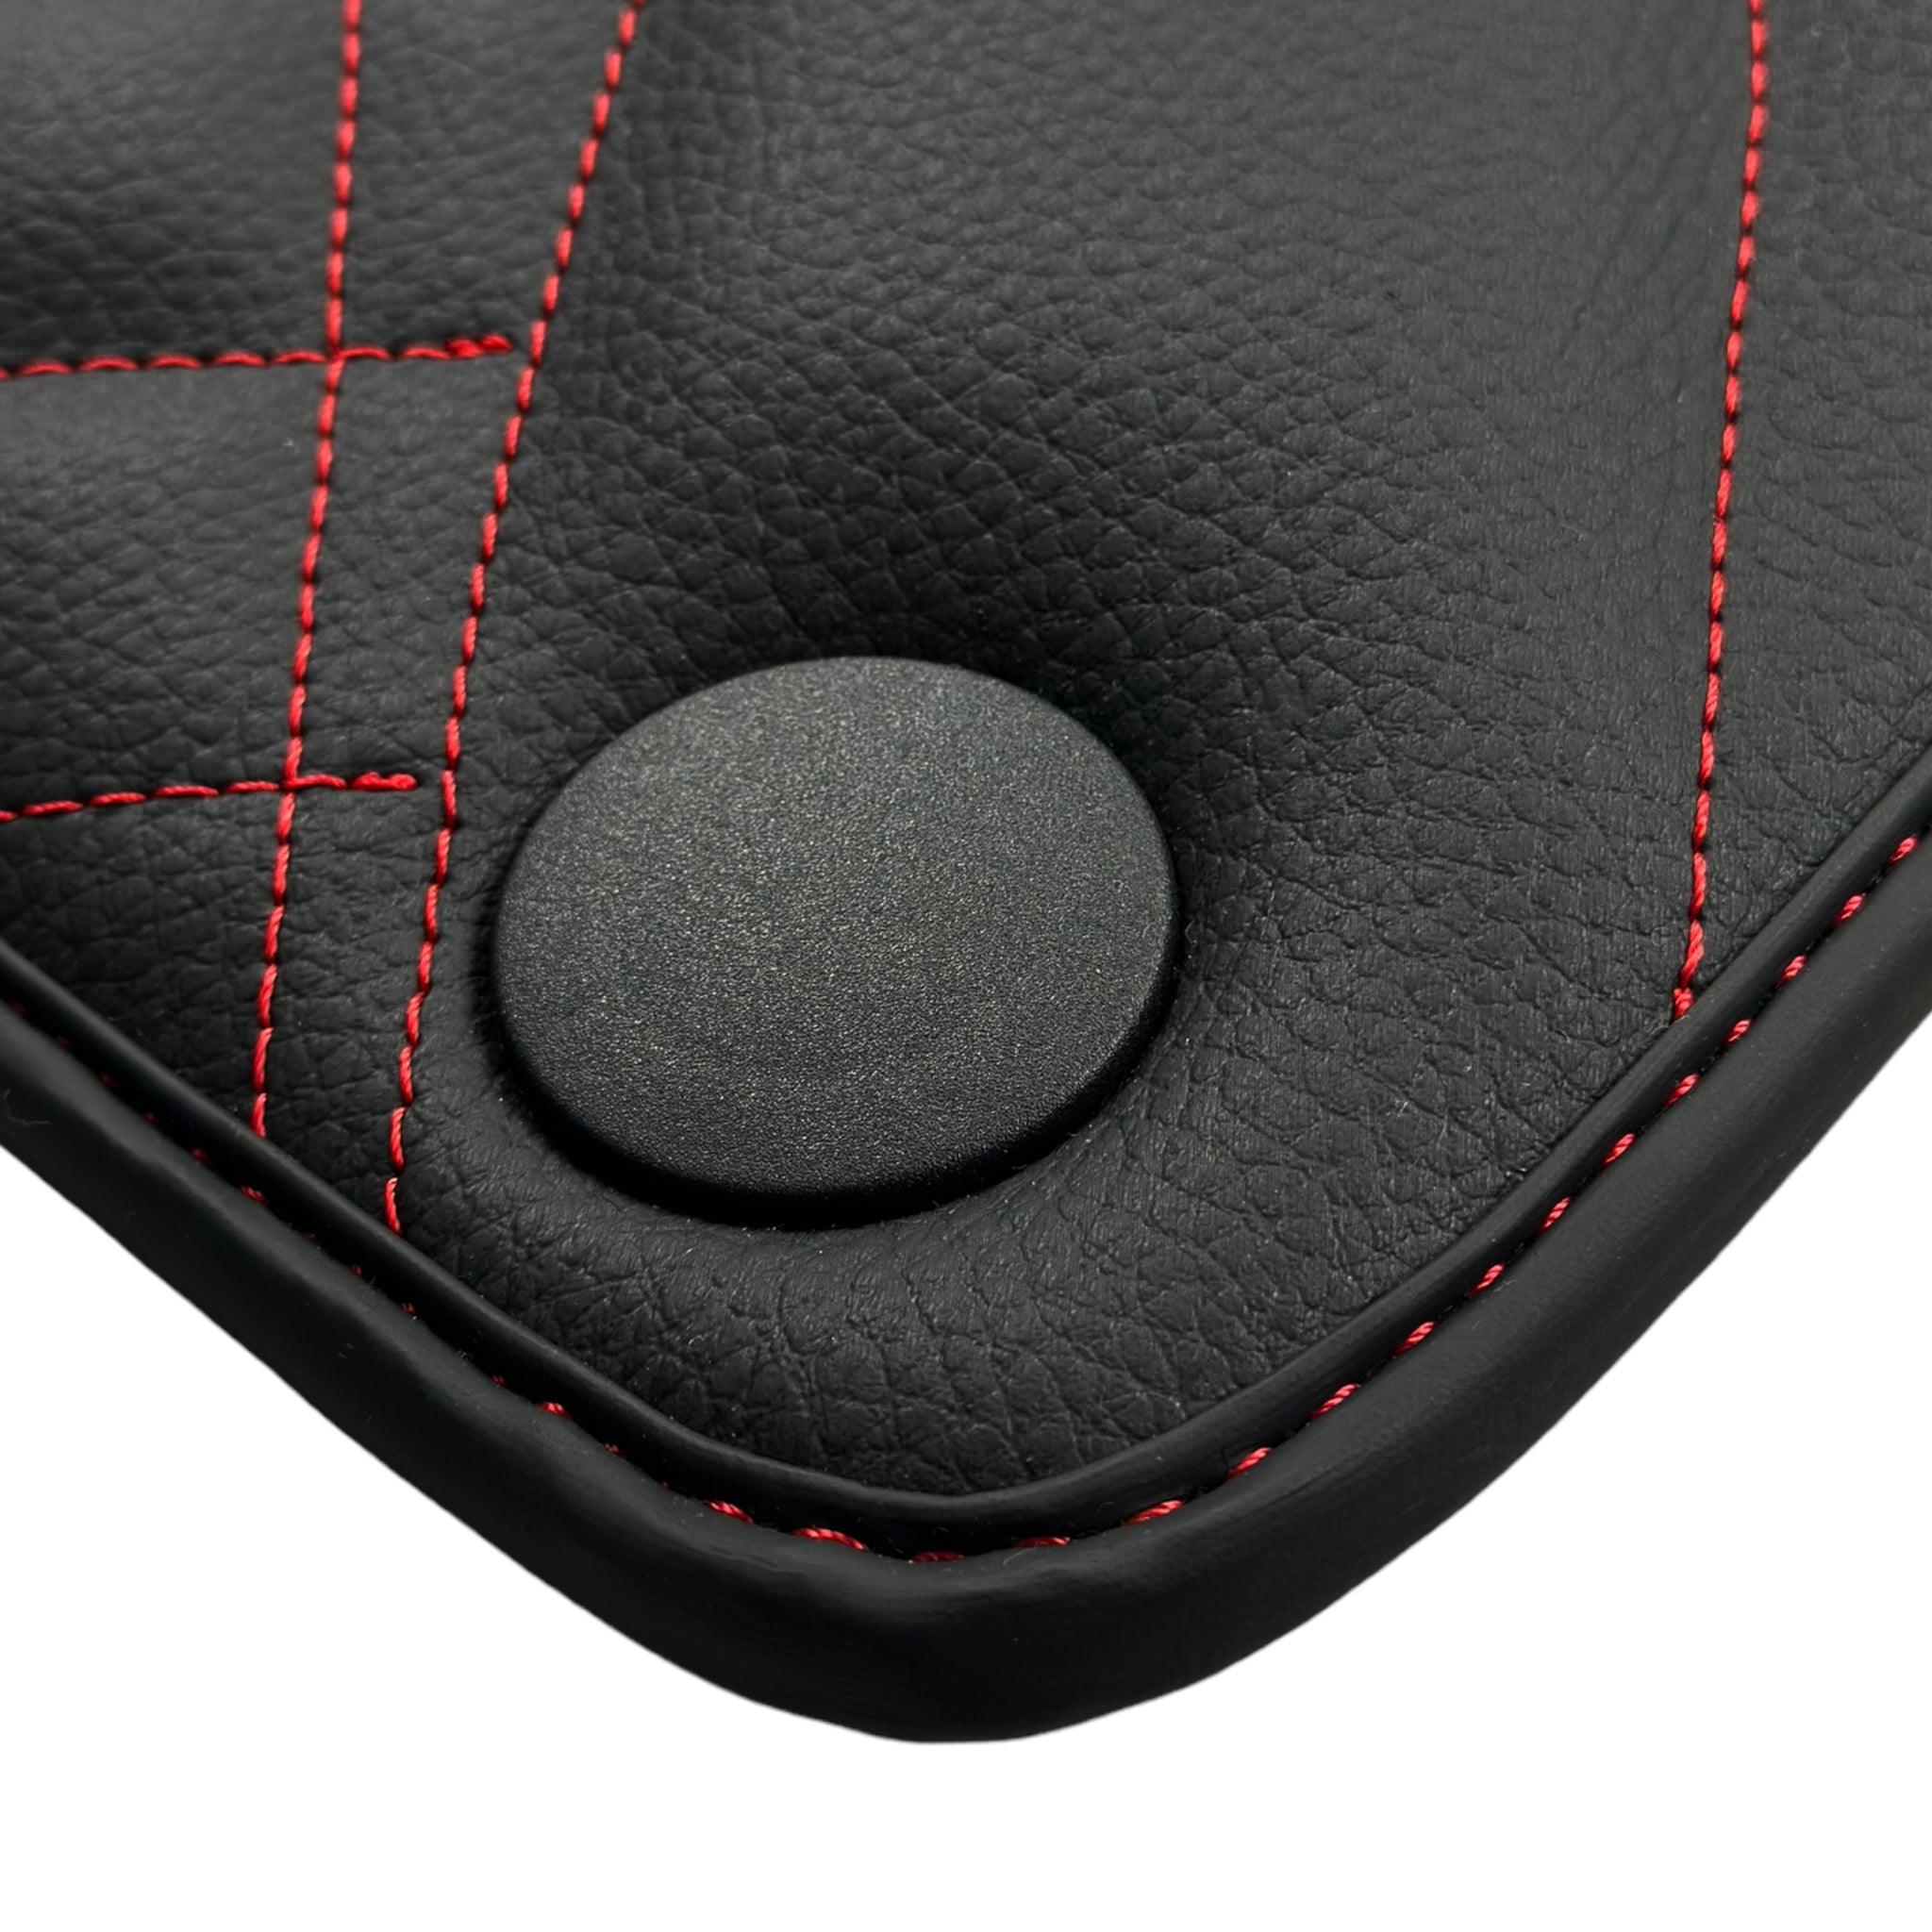 Black Leather Floor Mats For Mercedes Benz S-Class W222 (2013-2020) Short Wheelbase